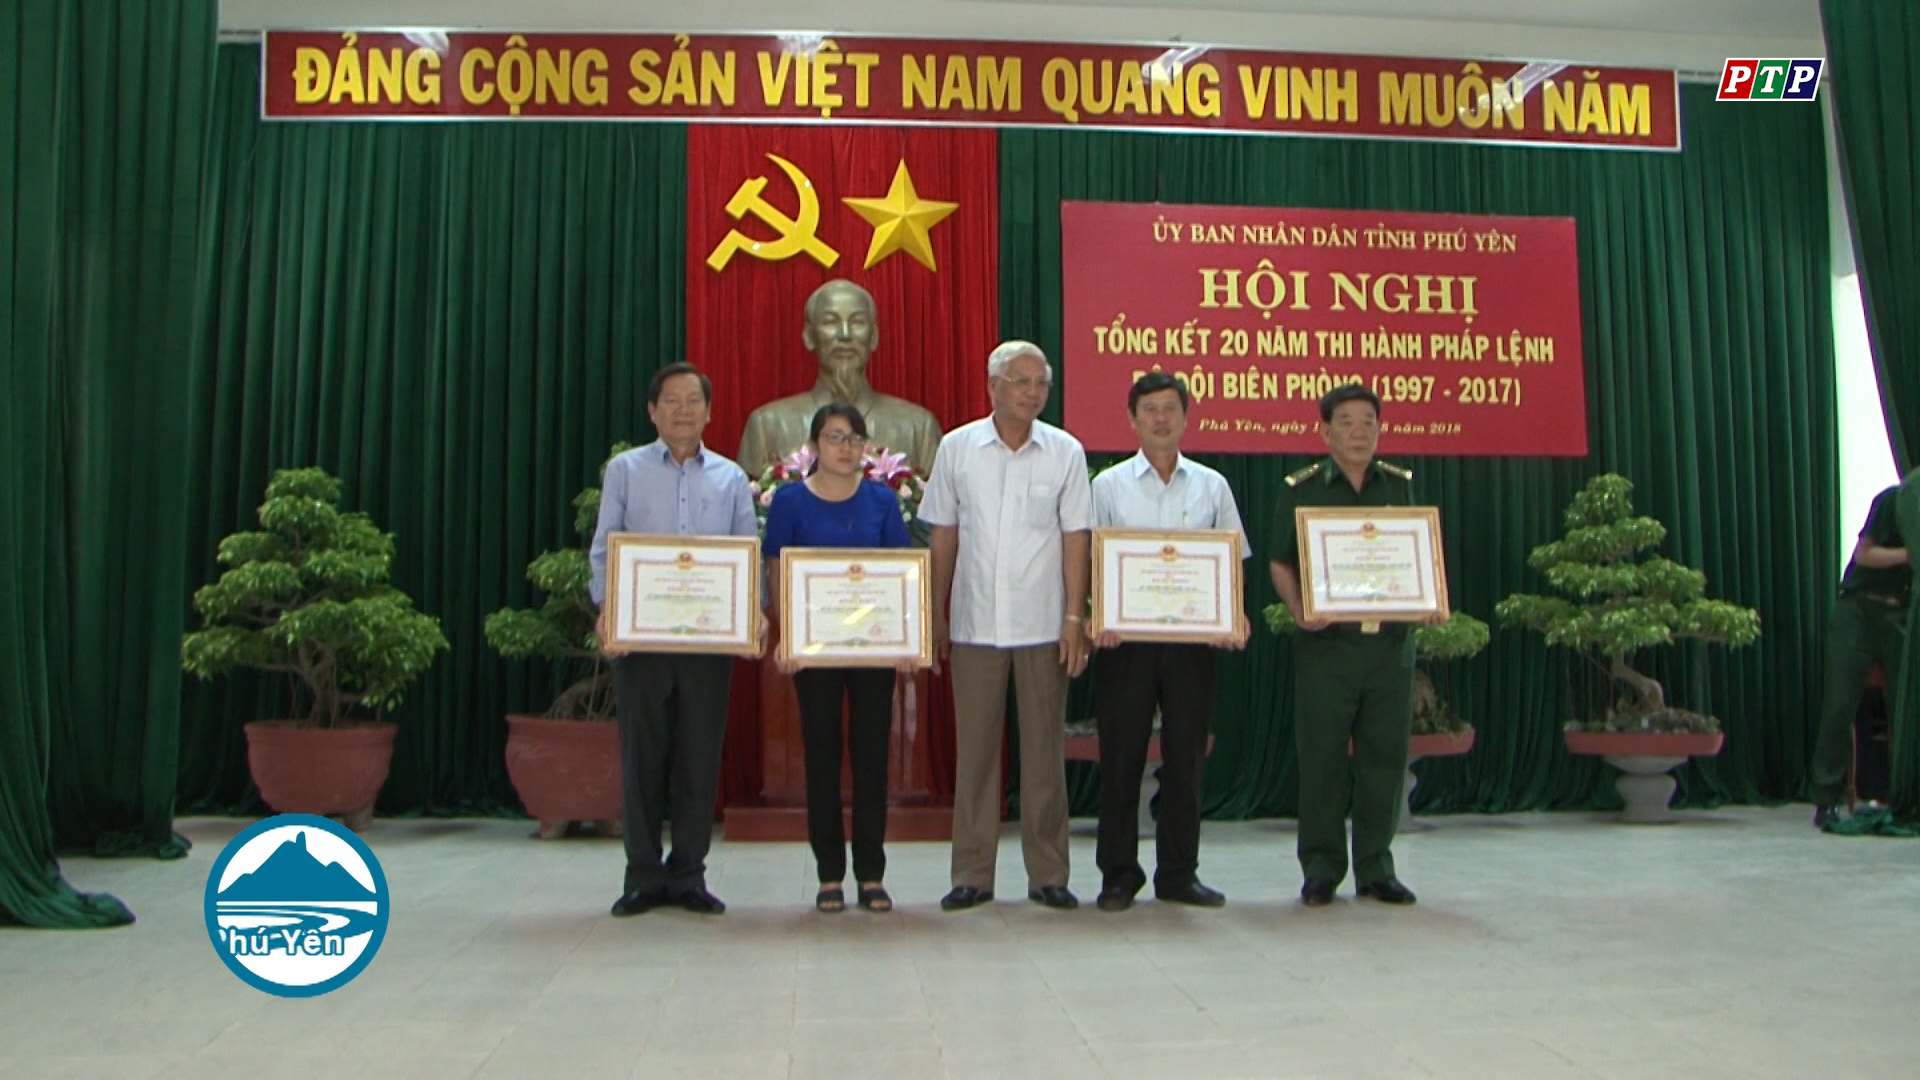 UBND tỉnh Phú Yên tổ chức Hội nghị tổng kết 20 năm thi hành Pháp lệnh BĐBP